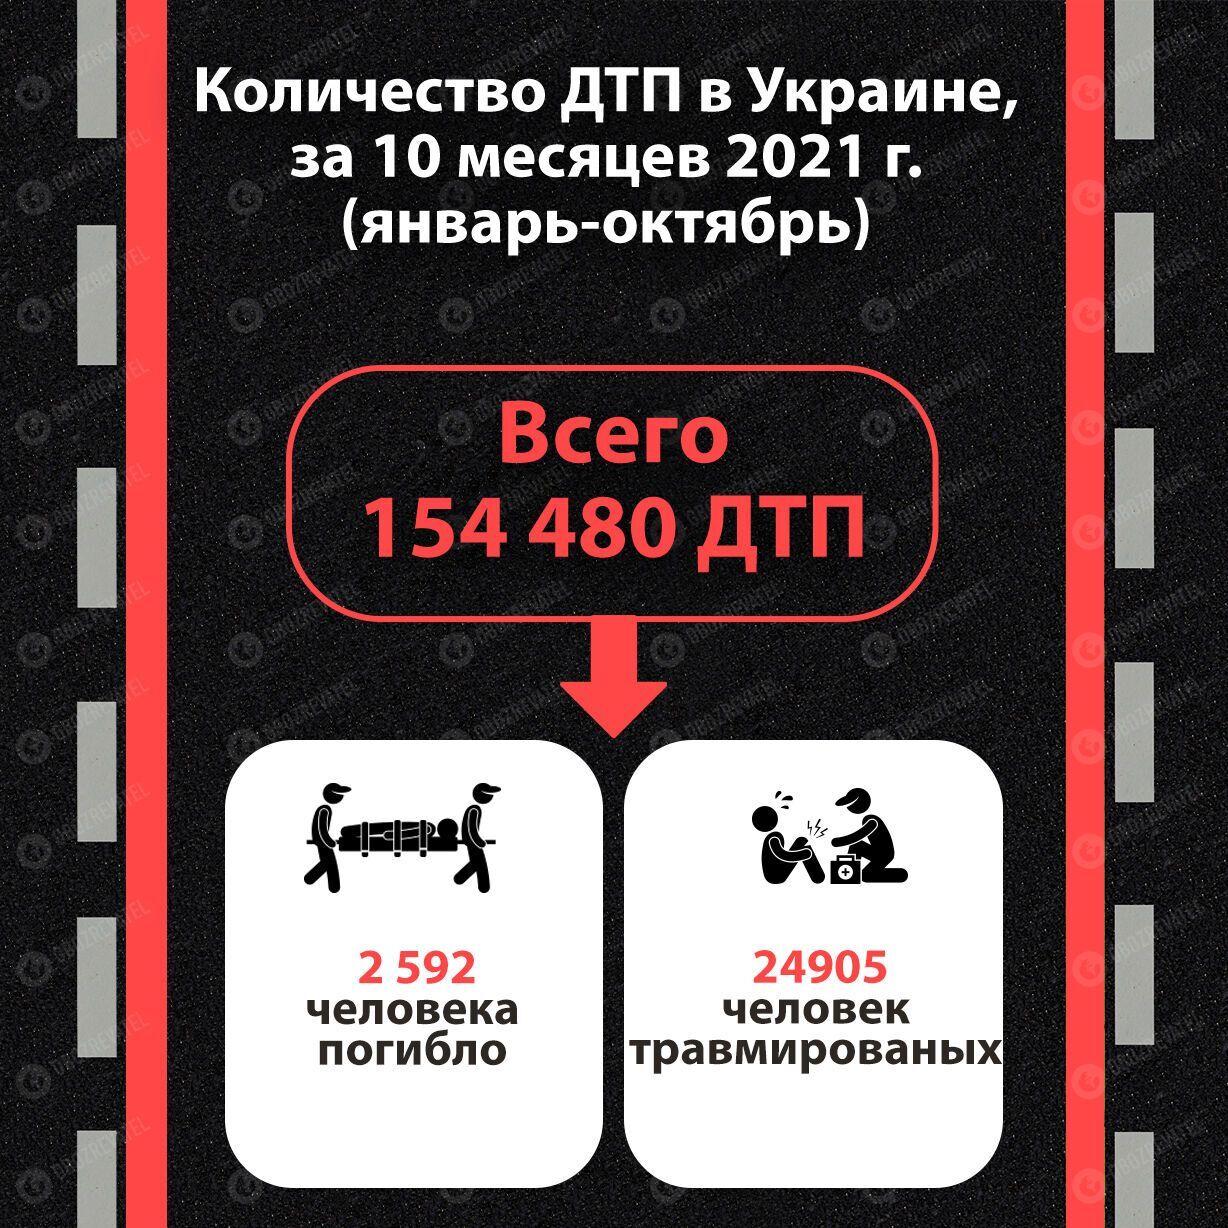 Статистика ДТП в Украине за январь-октябрь 2021